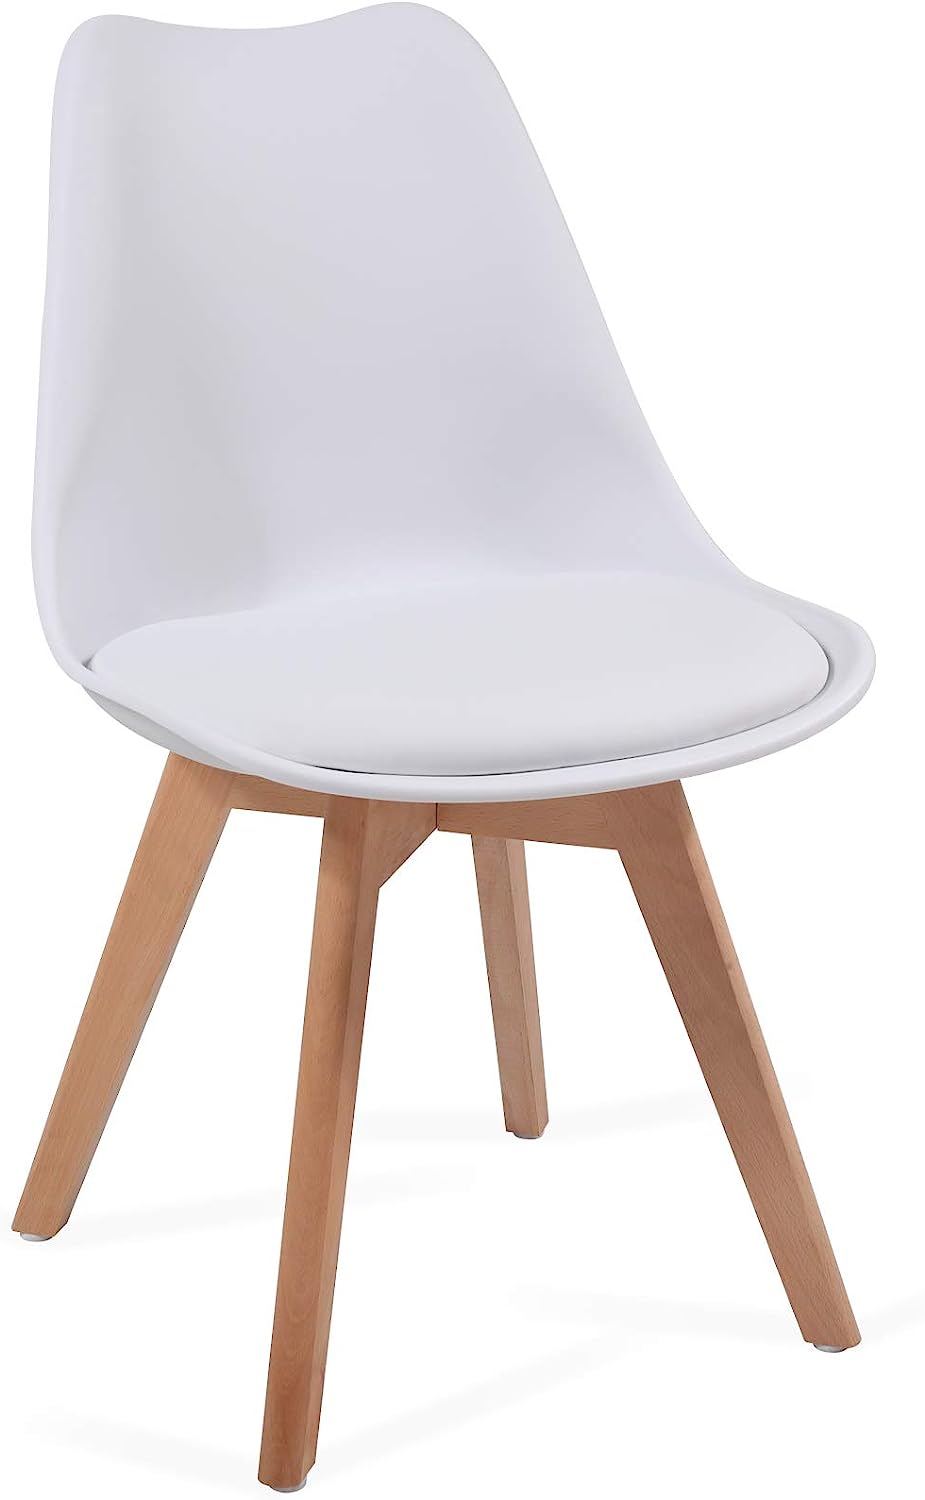 Eetkamerstoelen – Lounge stoelen – Scandinavische stijl – Retro – Vintage – Gestoffeerd – Set van 4 – Wit